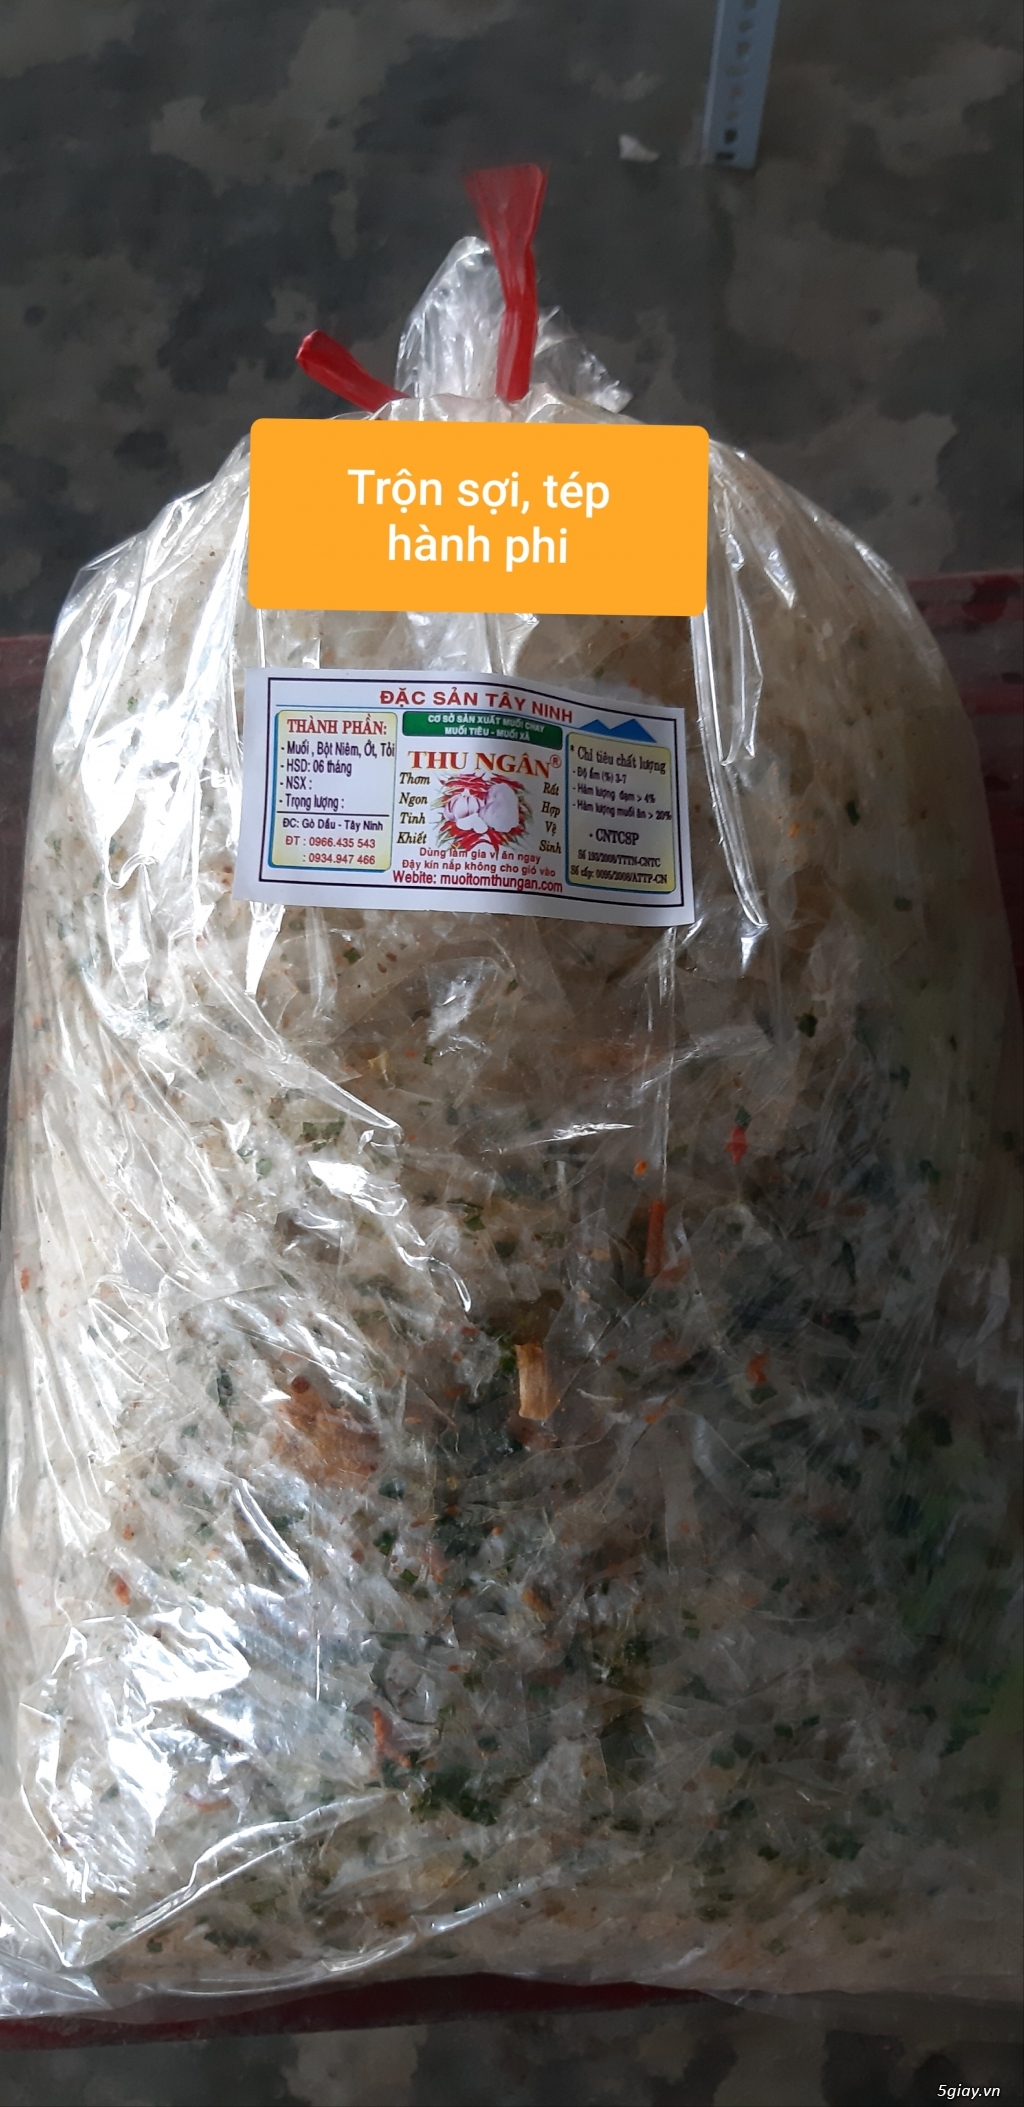 Đặc sản Tây Ninh-Thu Ngân cung cấp sỉ & lẻ các loại bánh tráng & muối các loại... - 41